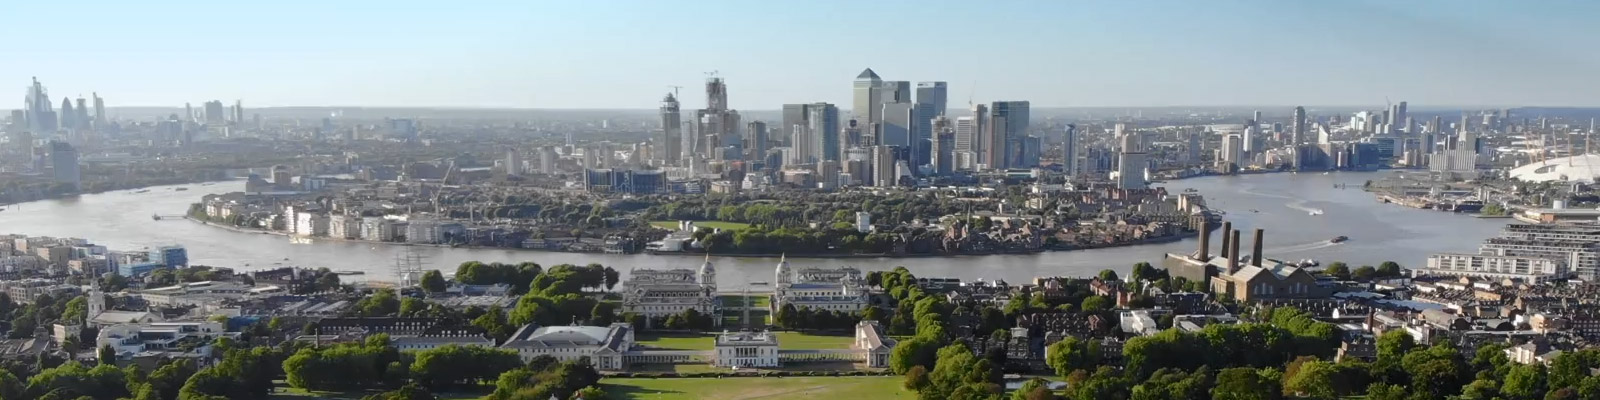 Greenwich London skyline